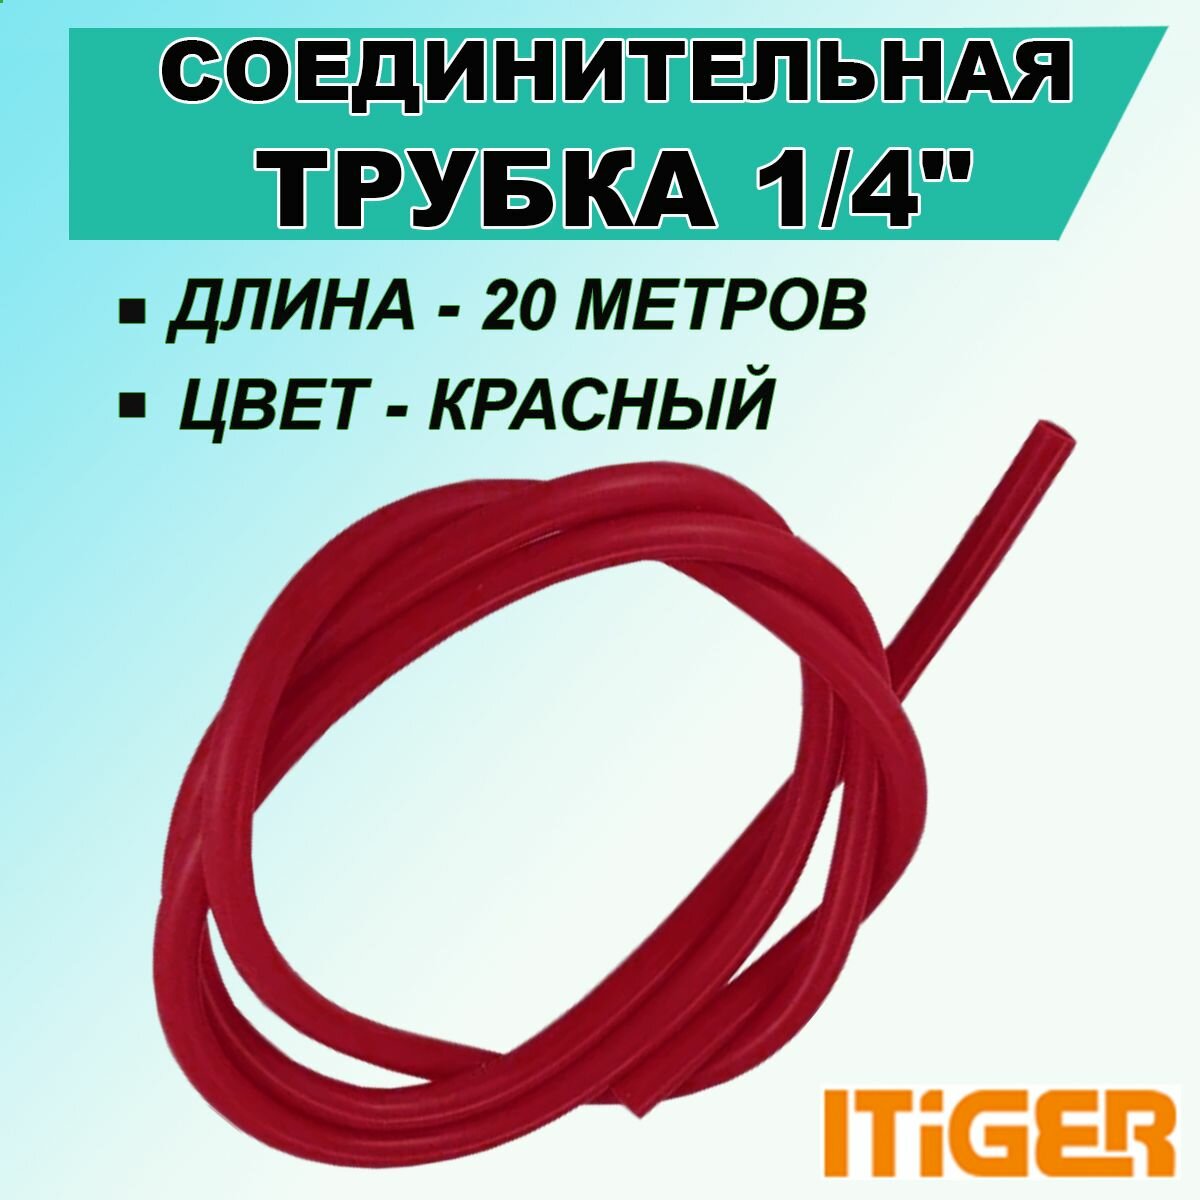 Трубка красная iTiGer 1/4 " 20 метров, для фитингов типа John Guest (JG), соединительная, на фильтры воды и обратный осмос